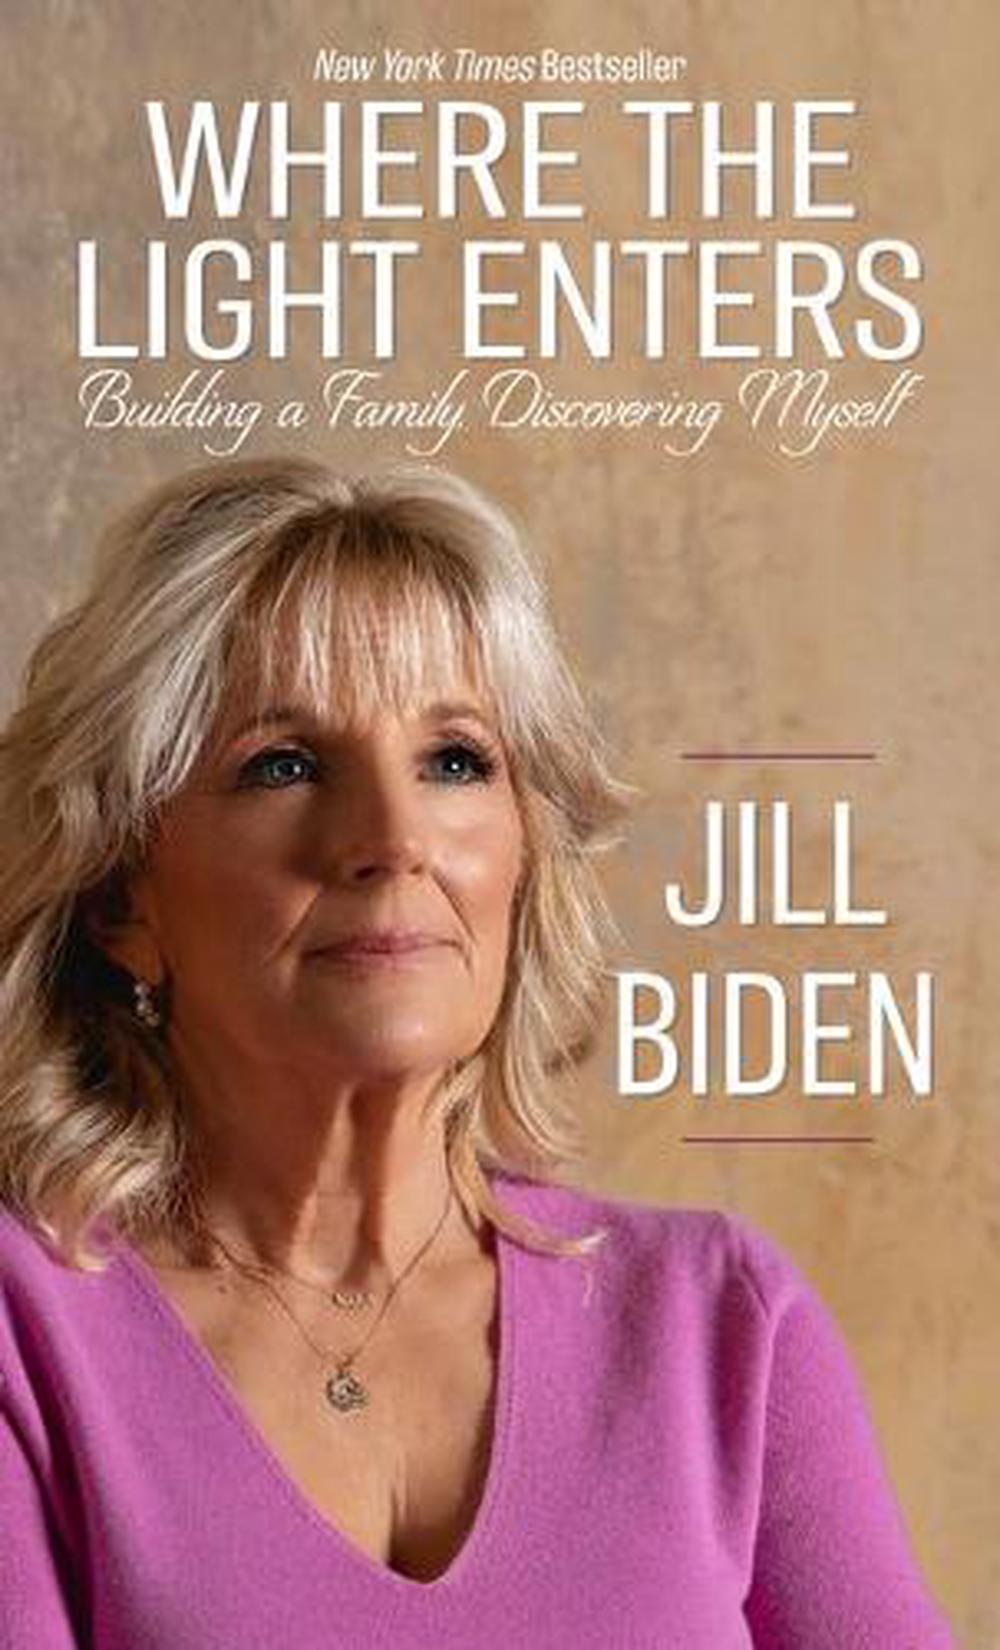 Where the Light Enters by Jill Biden